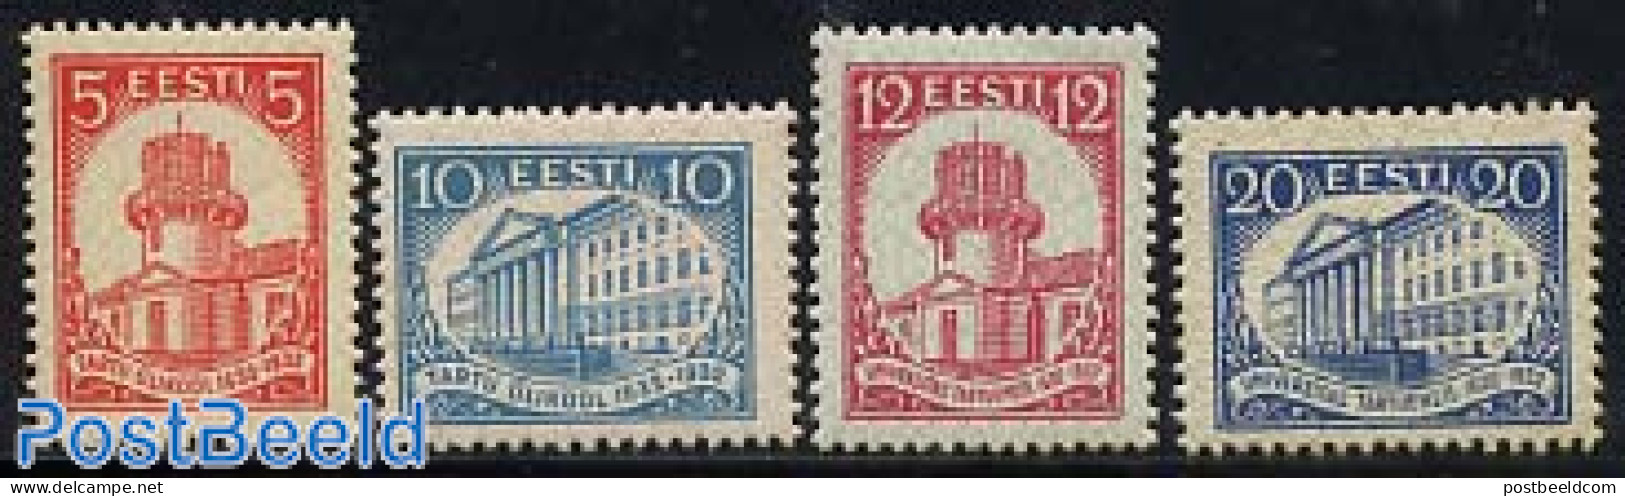 Estonia 1932 Tartu University 4v, Unused (hinged), Science - Astronomy - Education - Astrologie